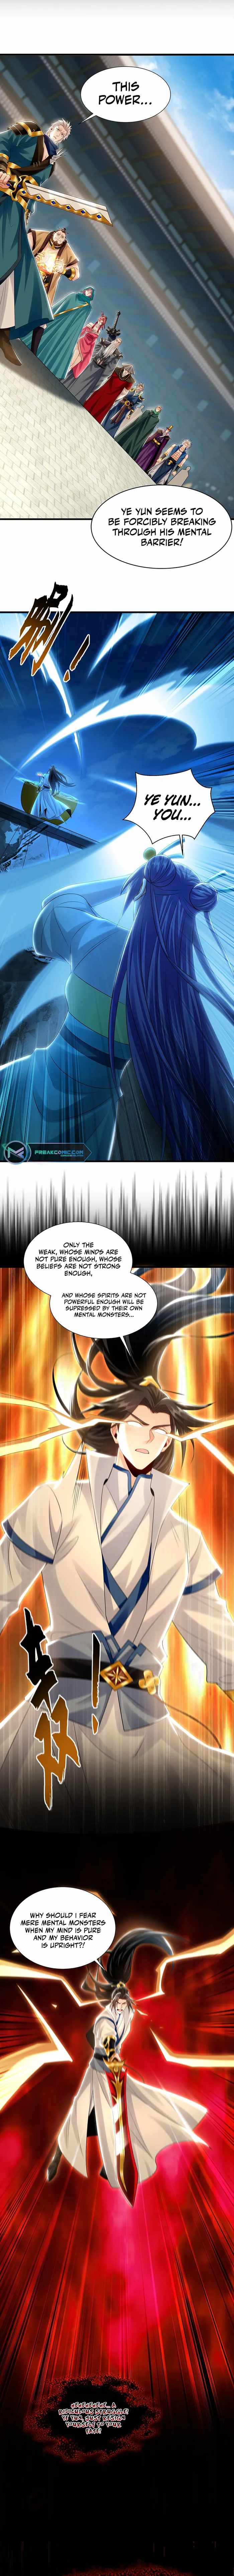 read 1 Million Times Attack Speed Chapter 62 Manga Online Free at Mangabuddy, MangaNato,Manhwatop | MangaSo.com